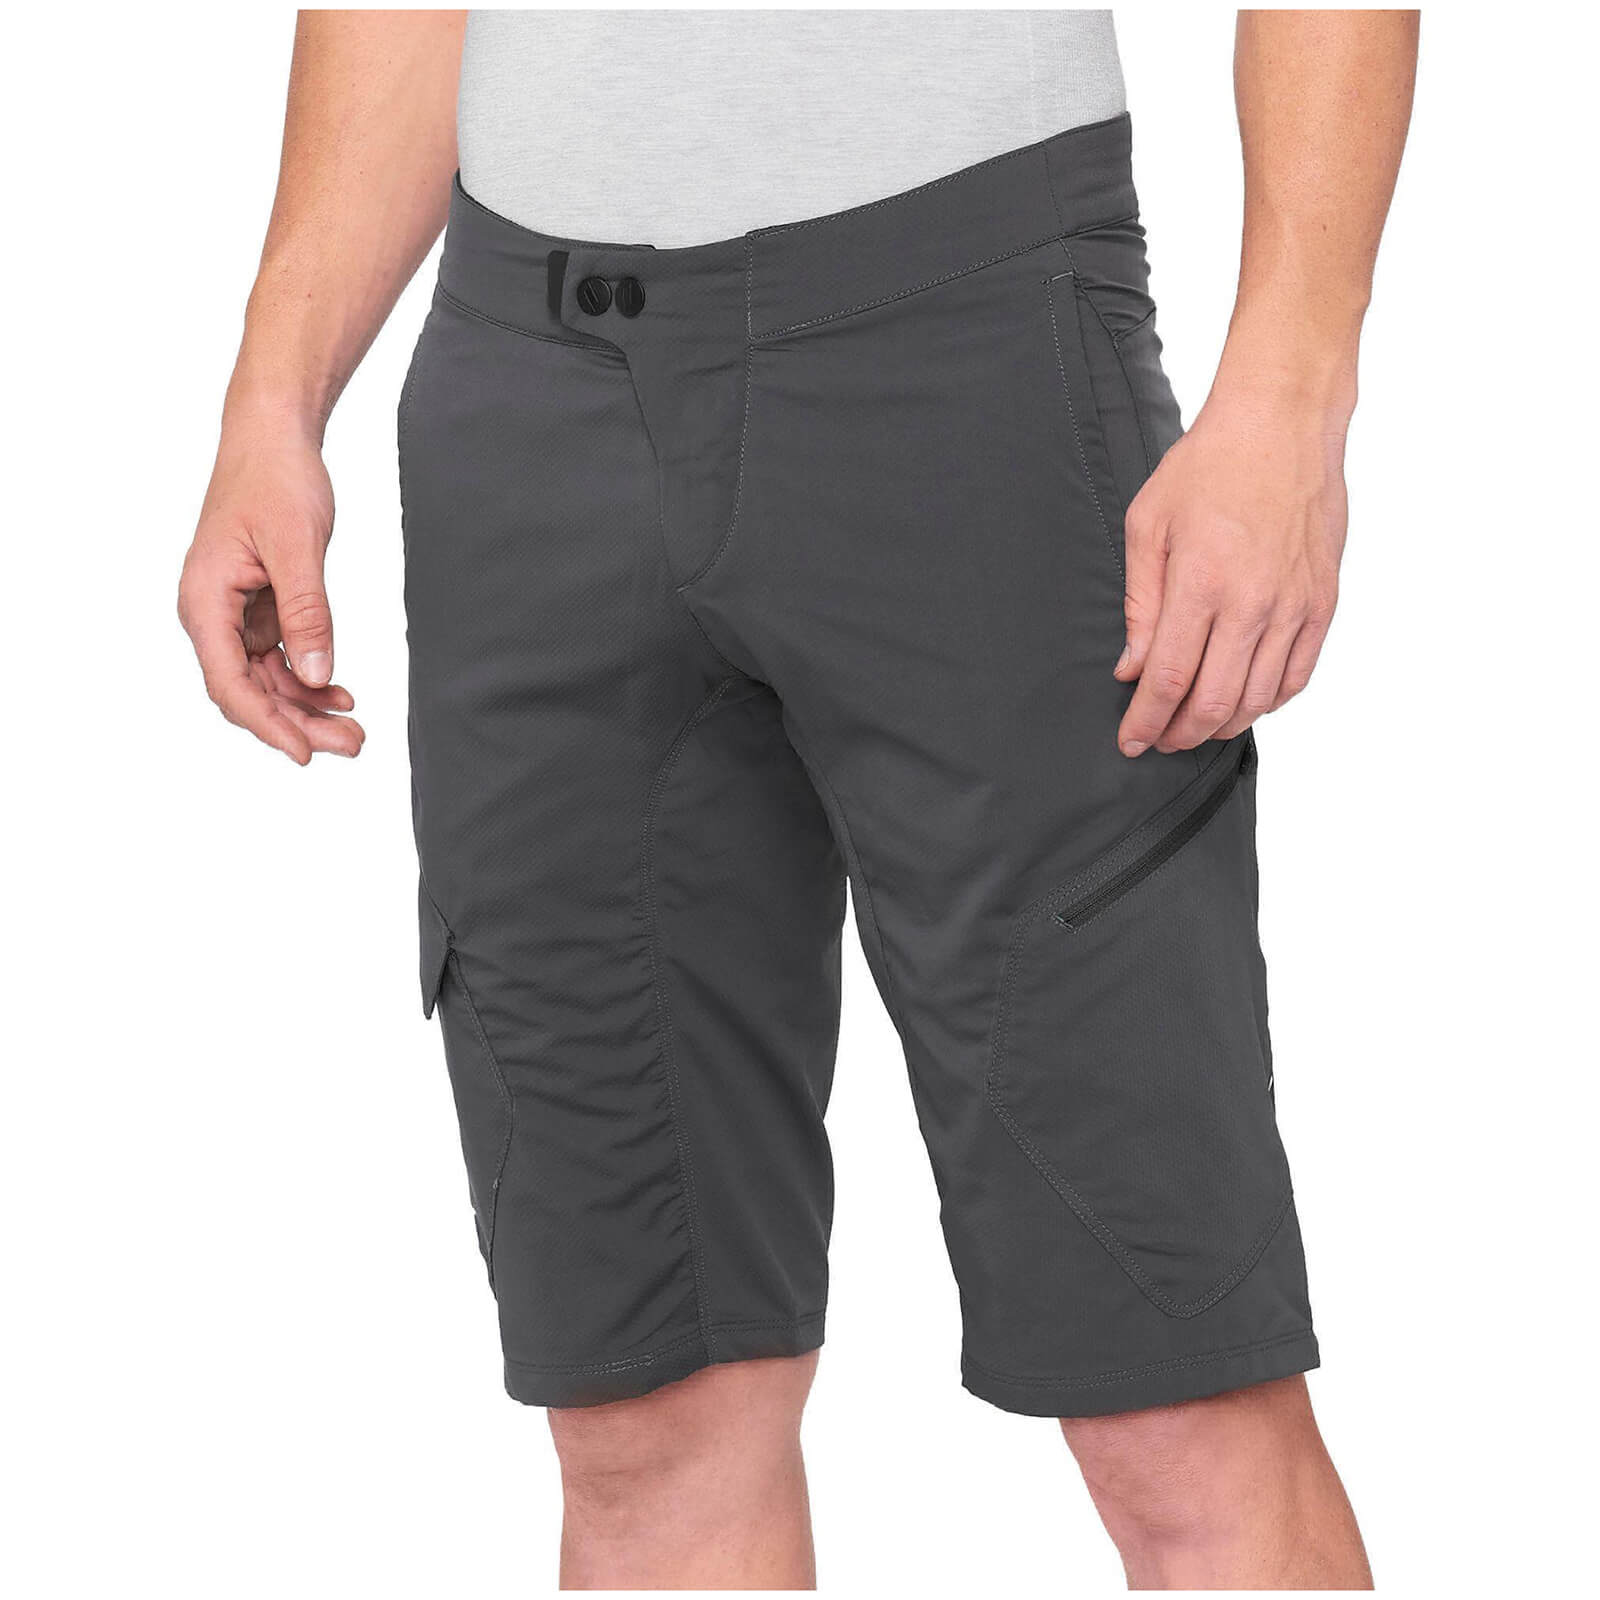 100% Ridecamp MTB Shorts - 32 - Charcoal